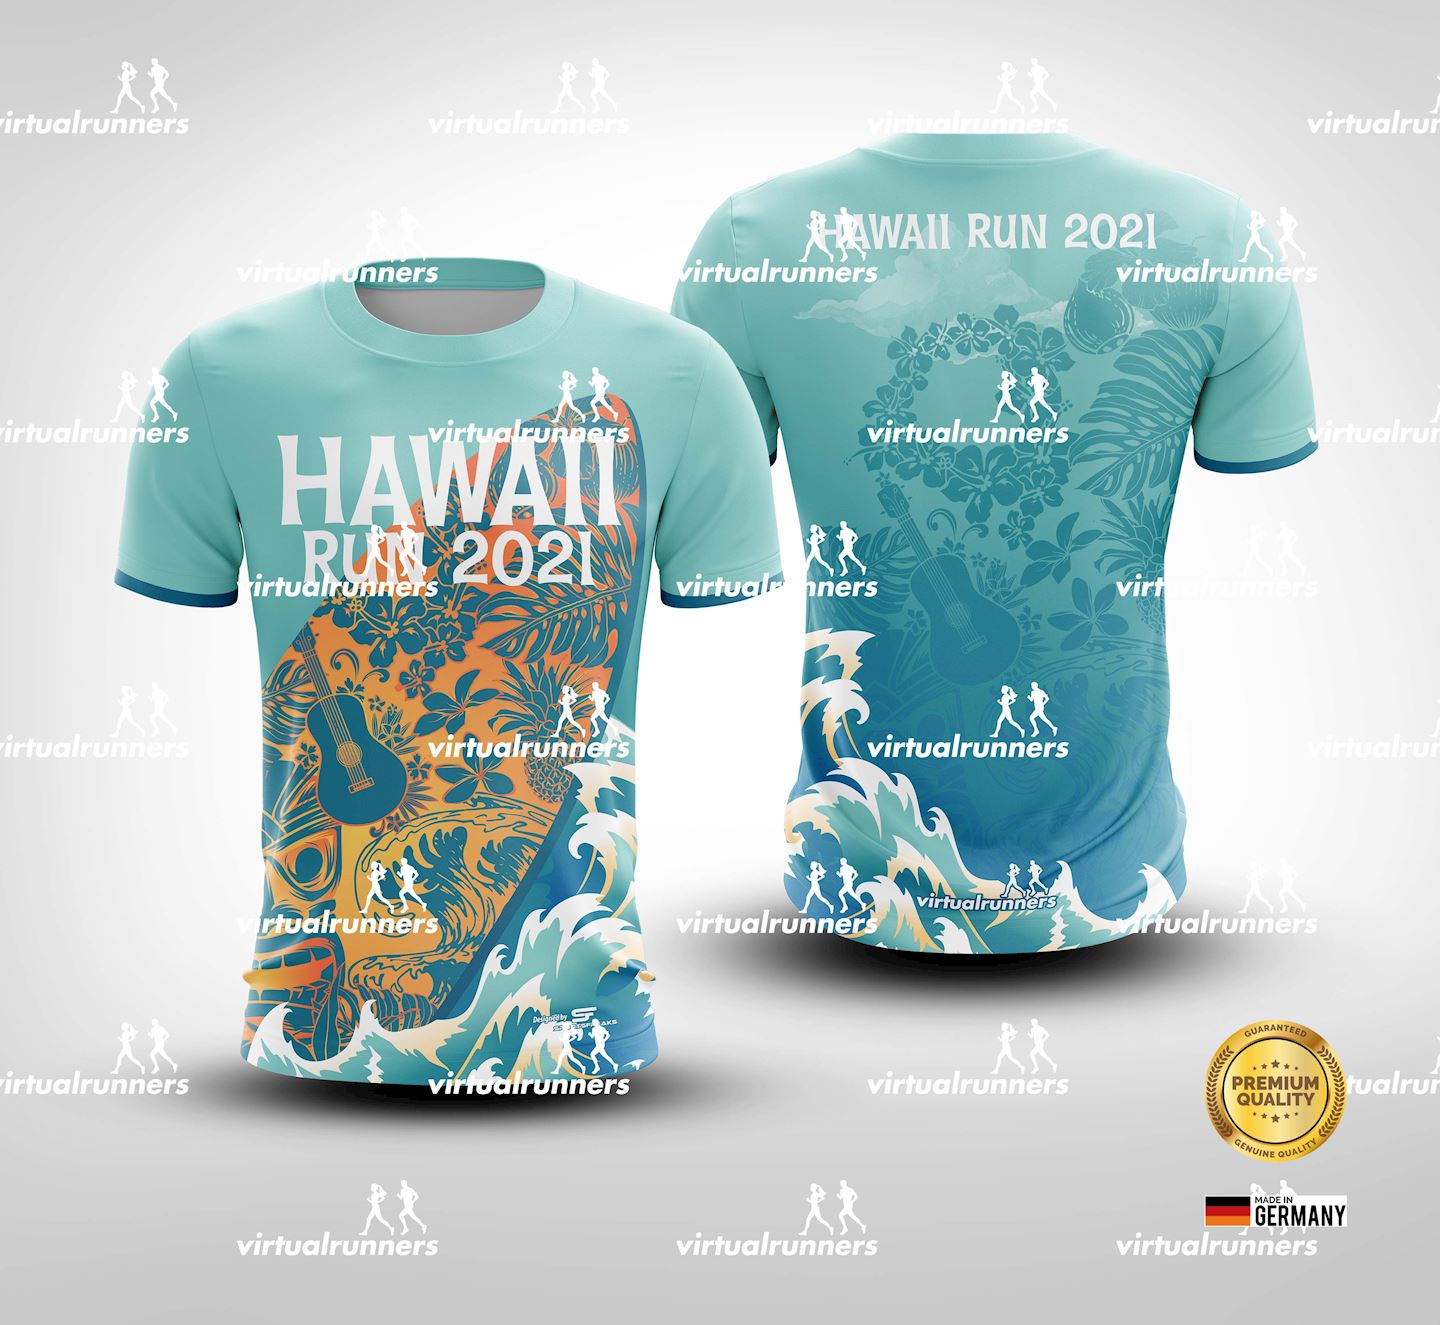 magic of hawaii virtual run